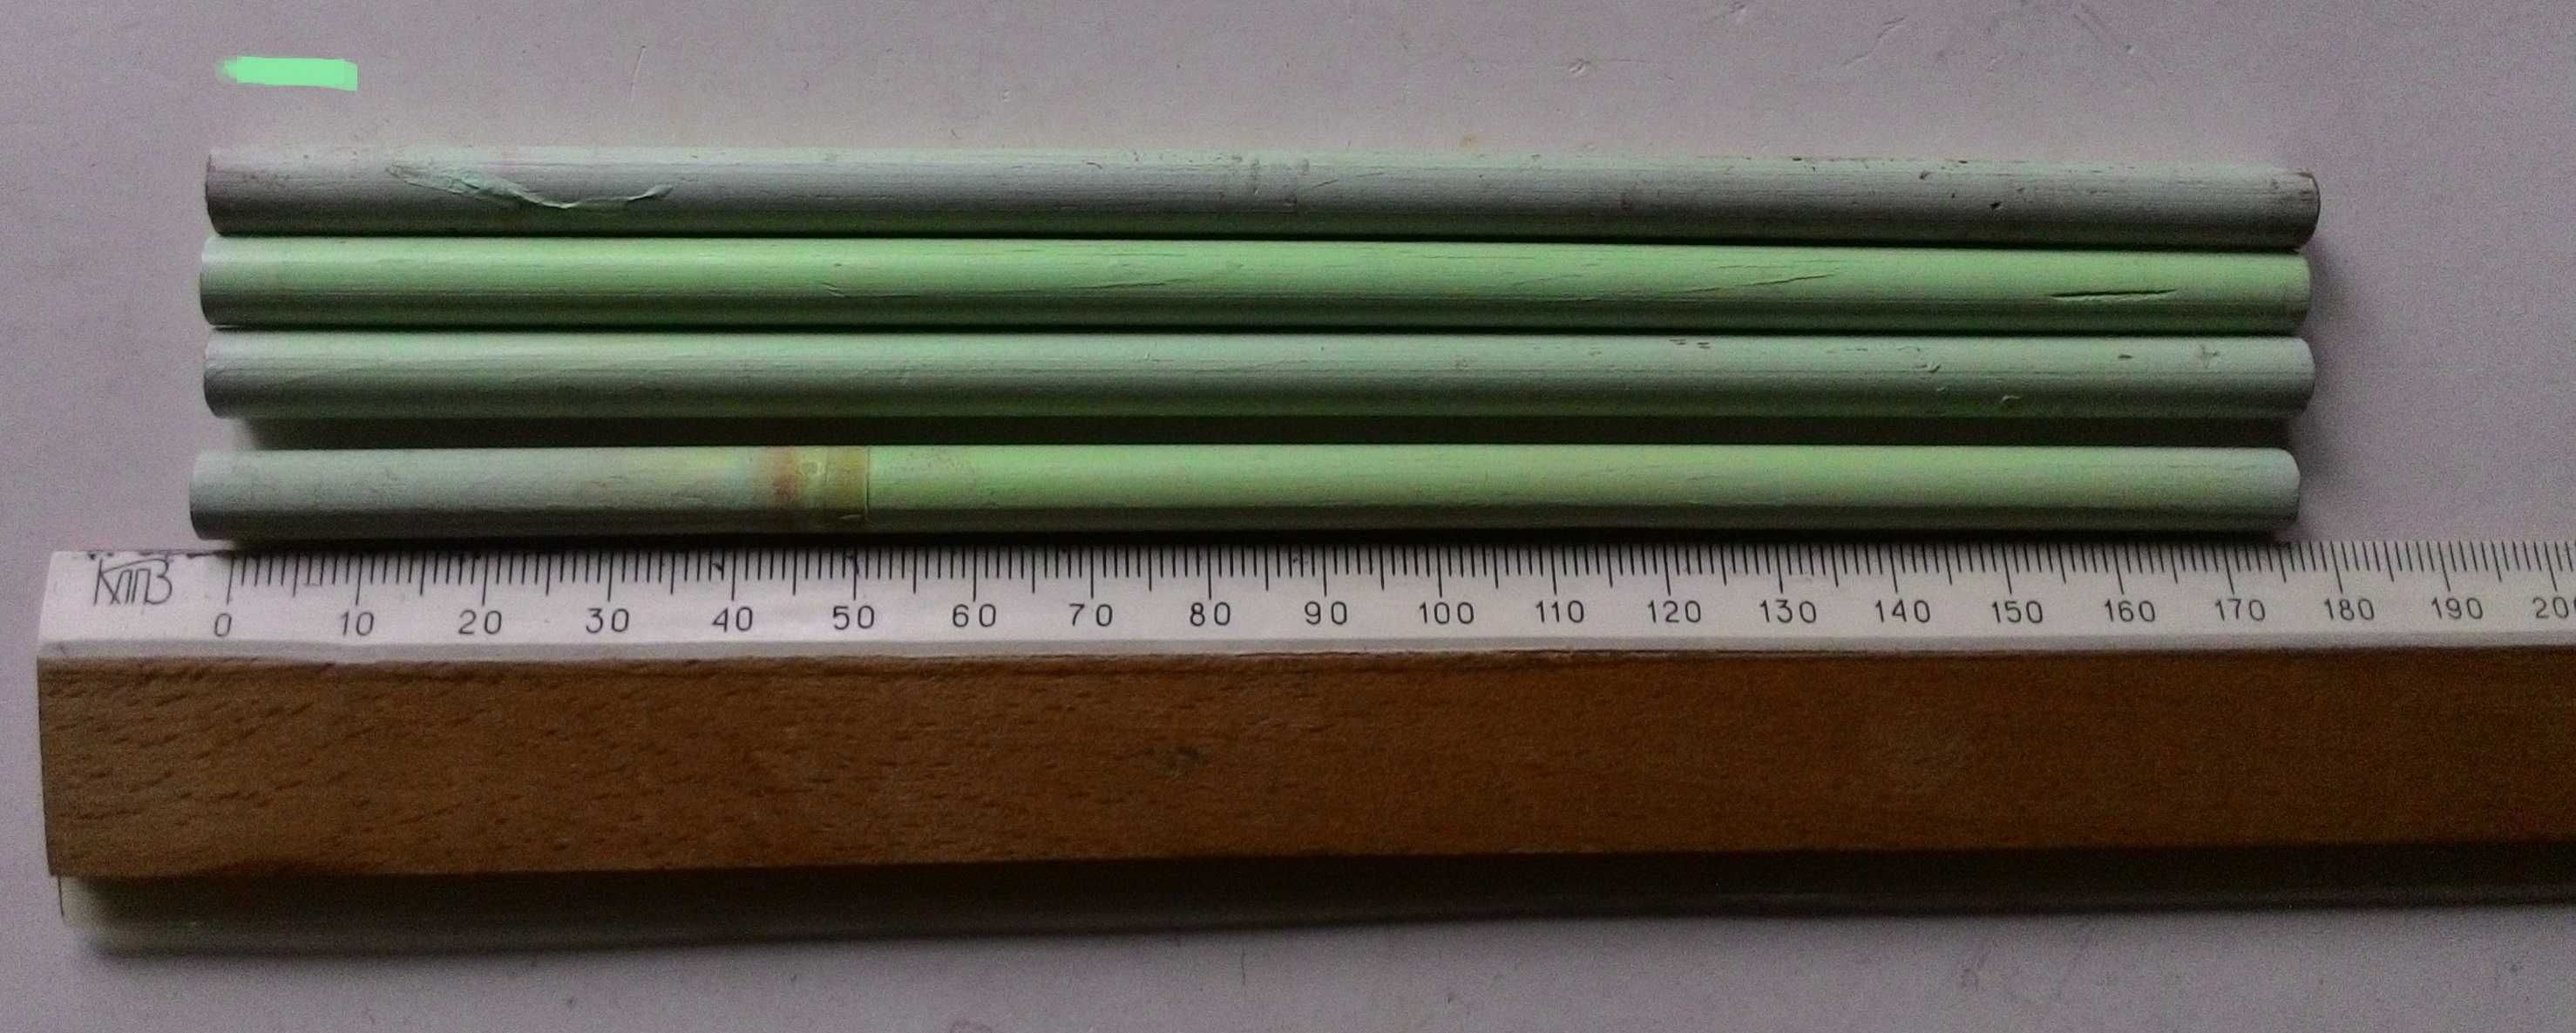 Цветные карандаши для школы